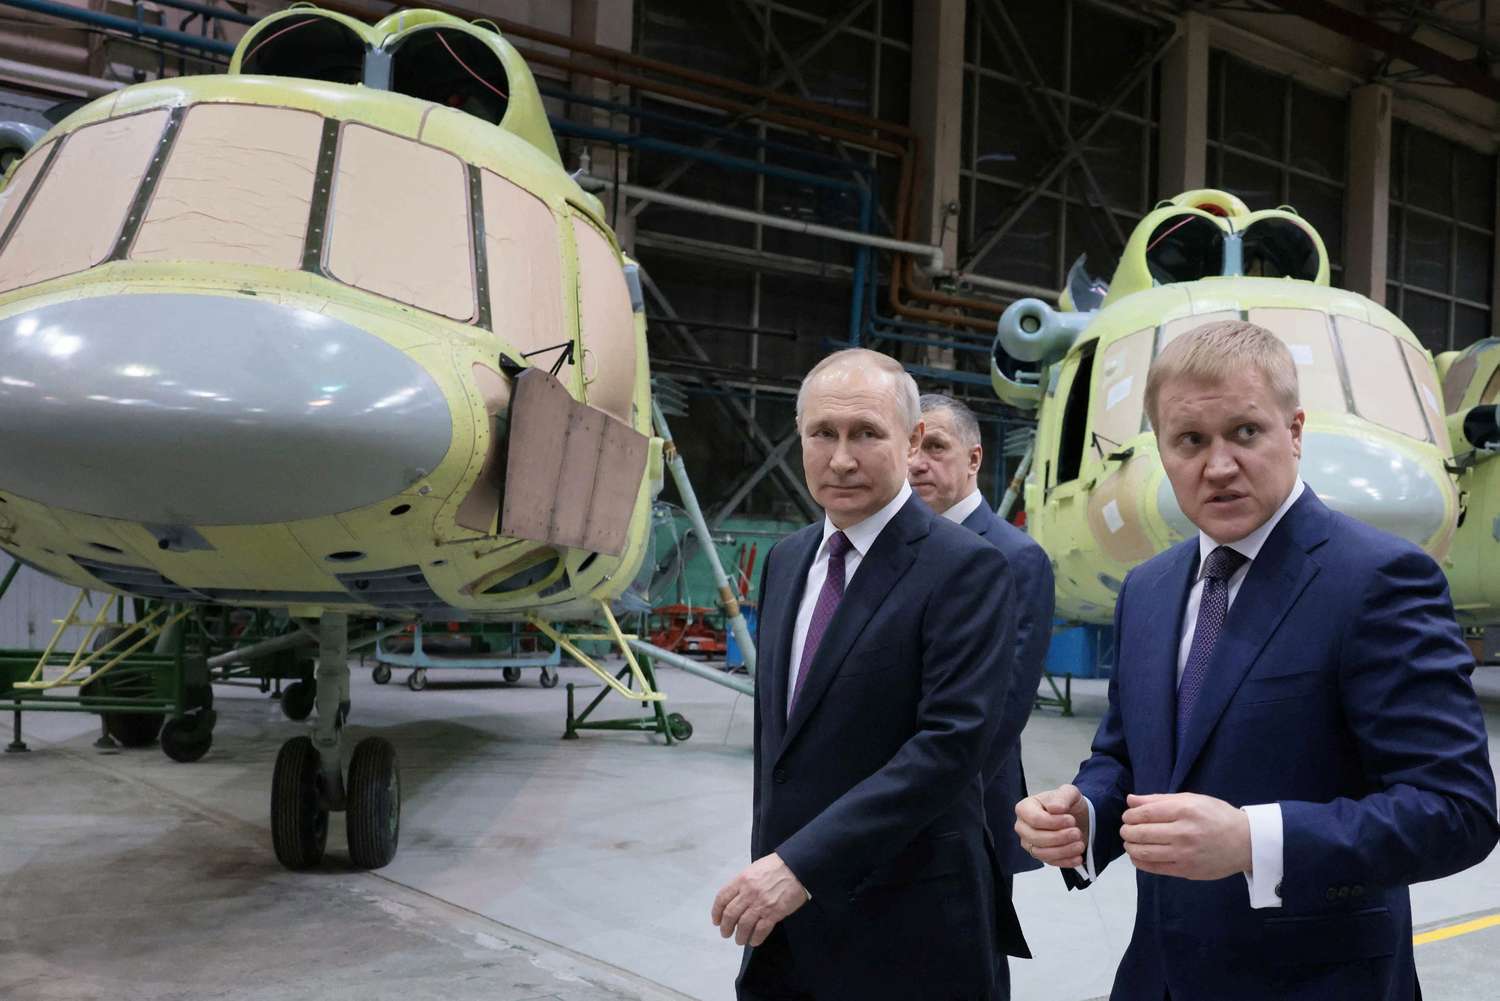 El presidente ruso visitó una fábrica de aviones.